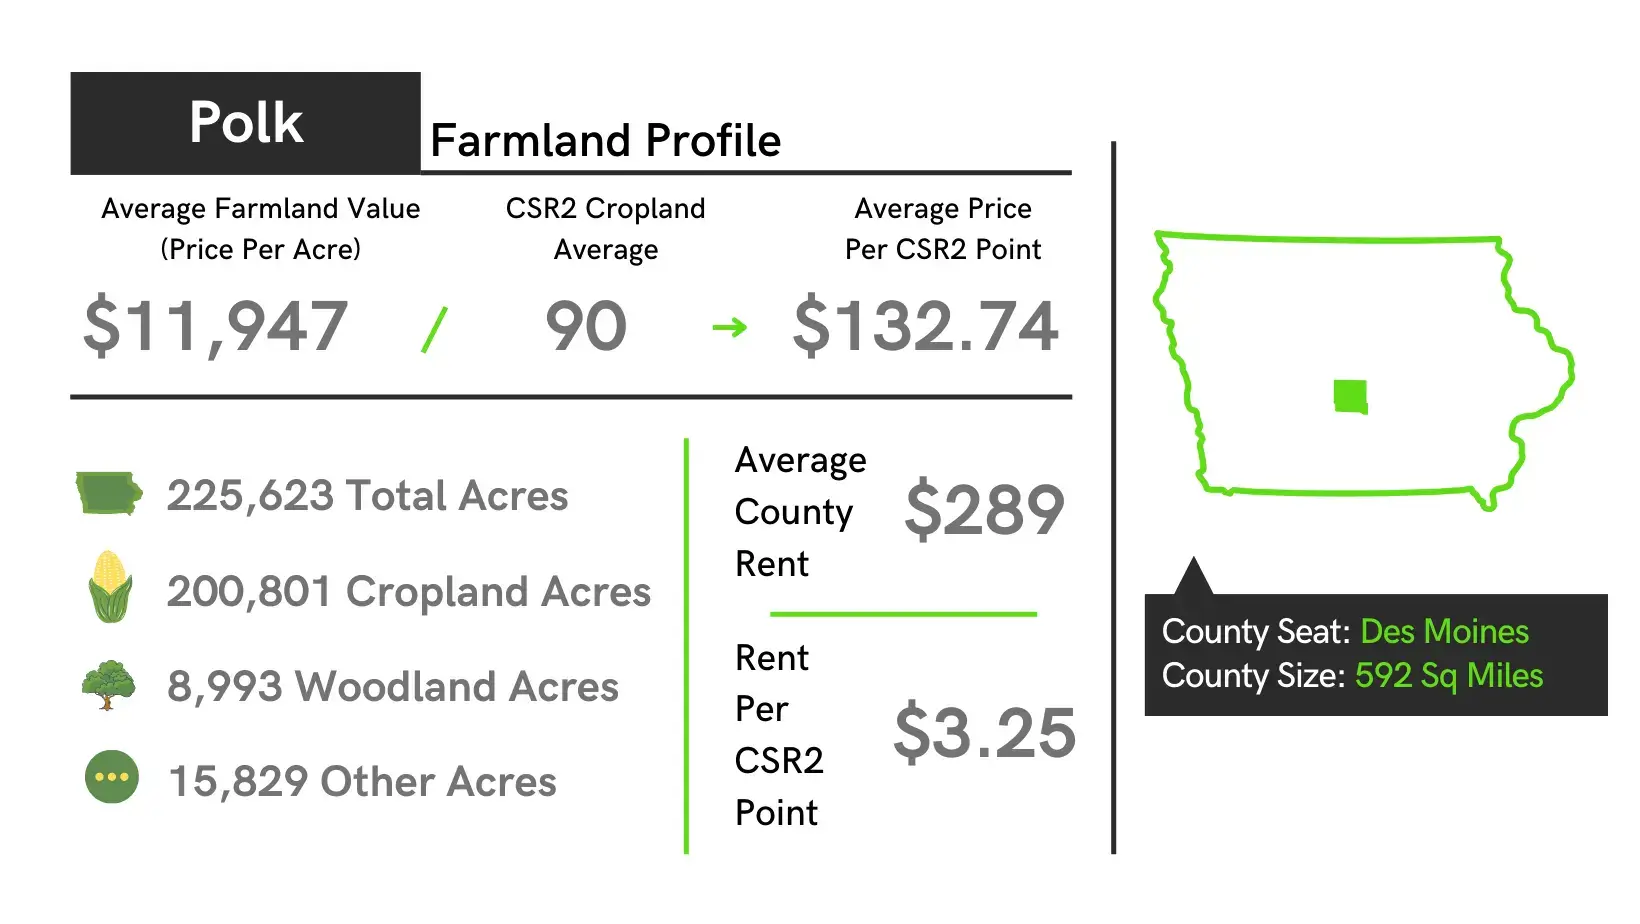 Polk County Farmland Profile